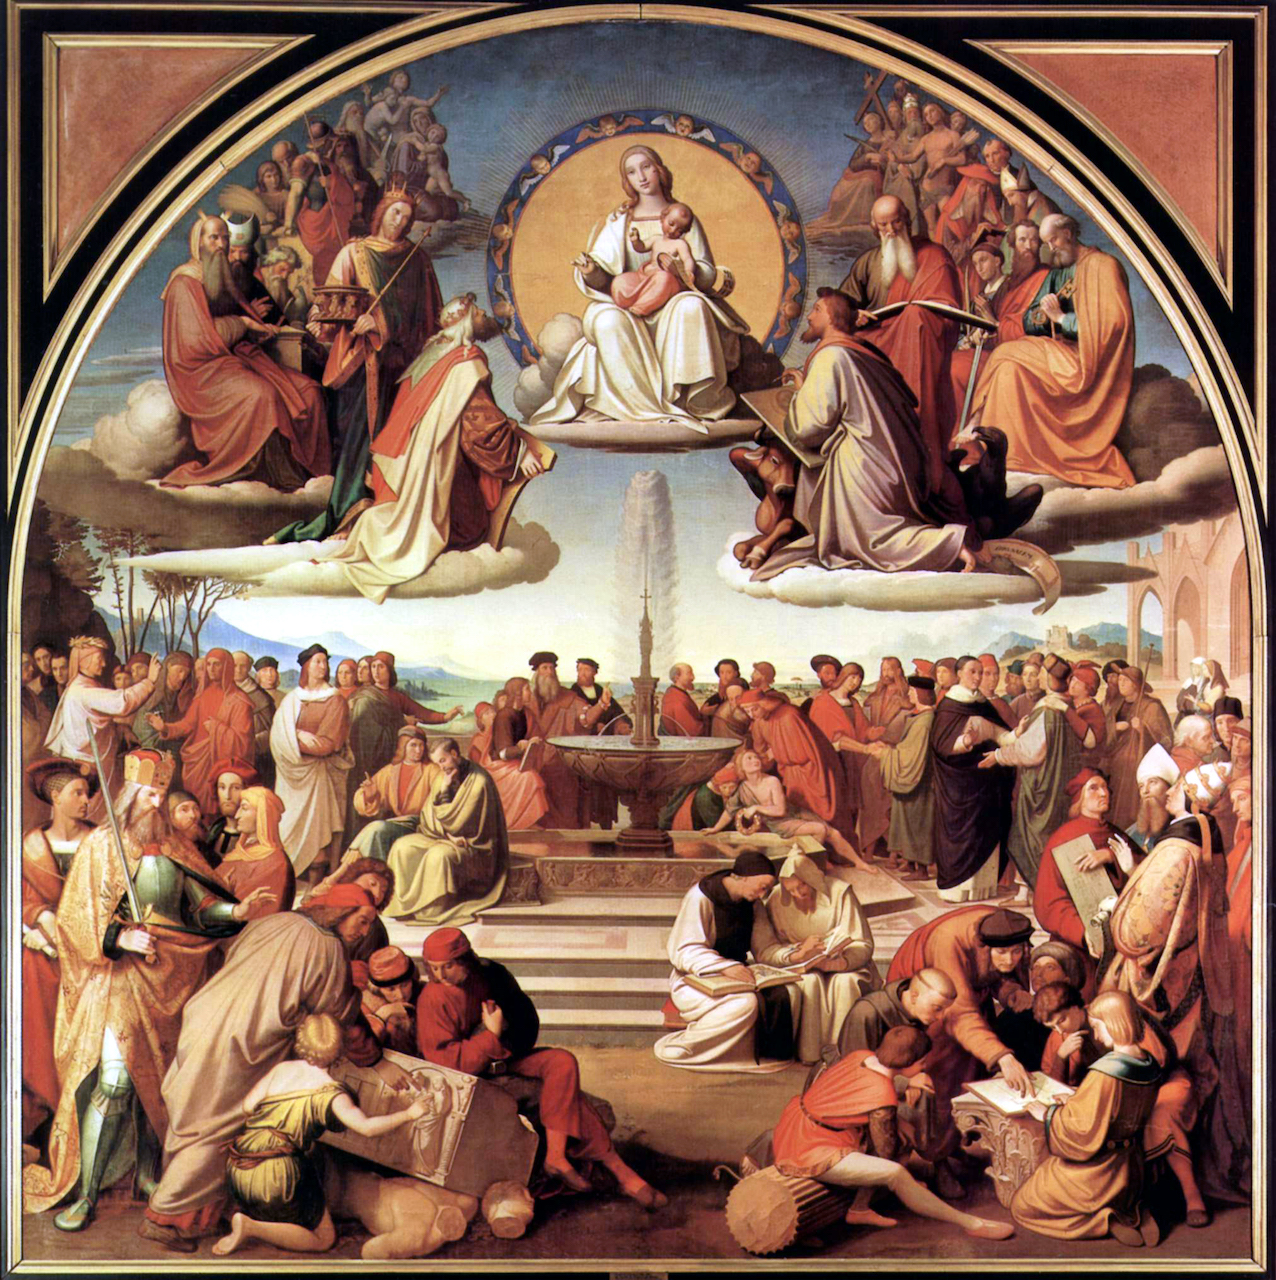 Friedrich Overbeck. Der Triumph der Religion in den Künsten. 1831-40. Öl/Leinwand. 392 x 392cm